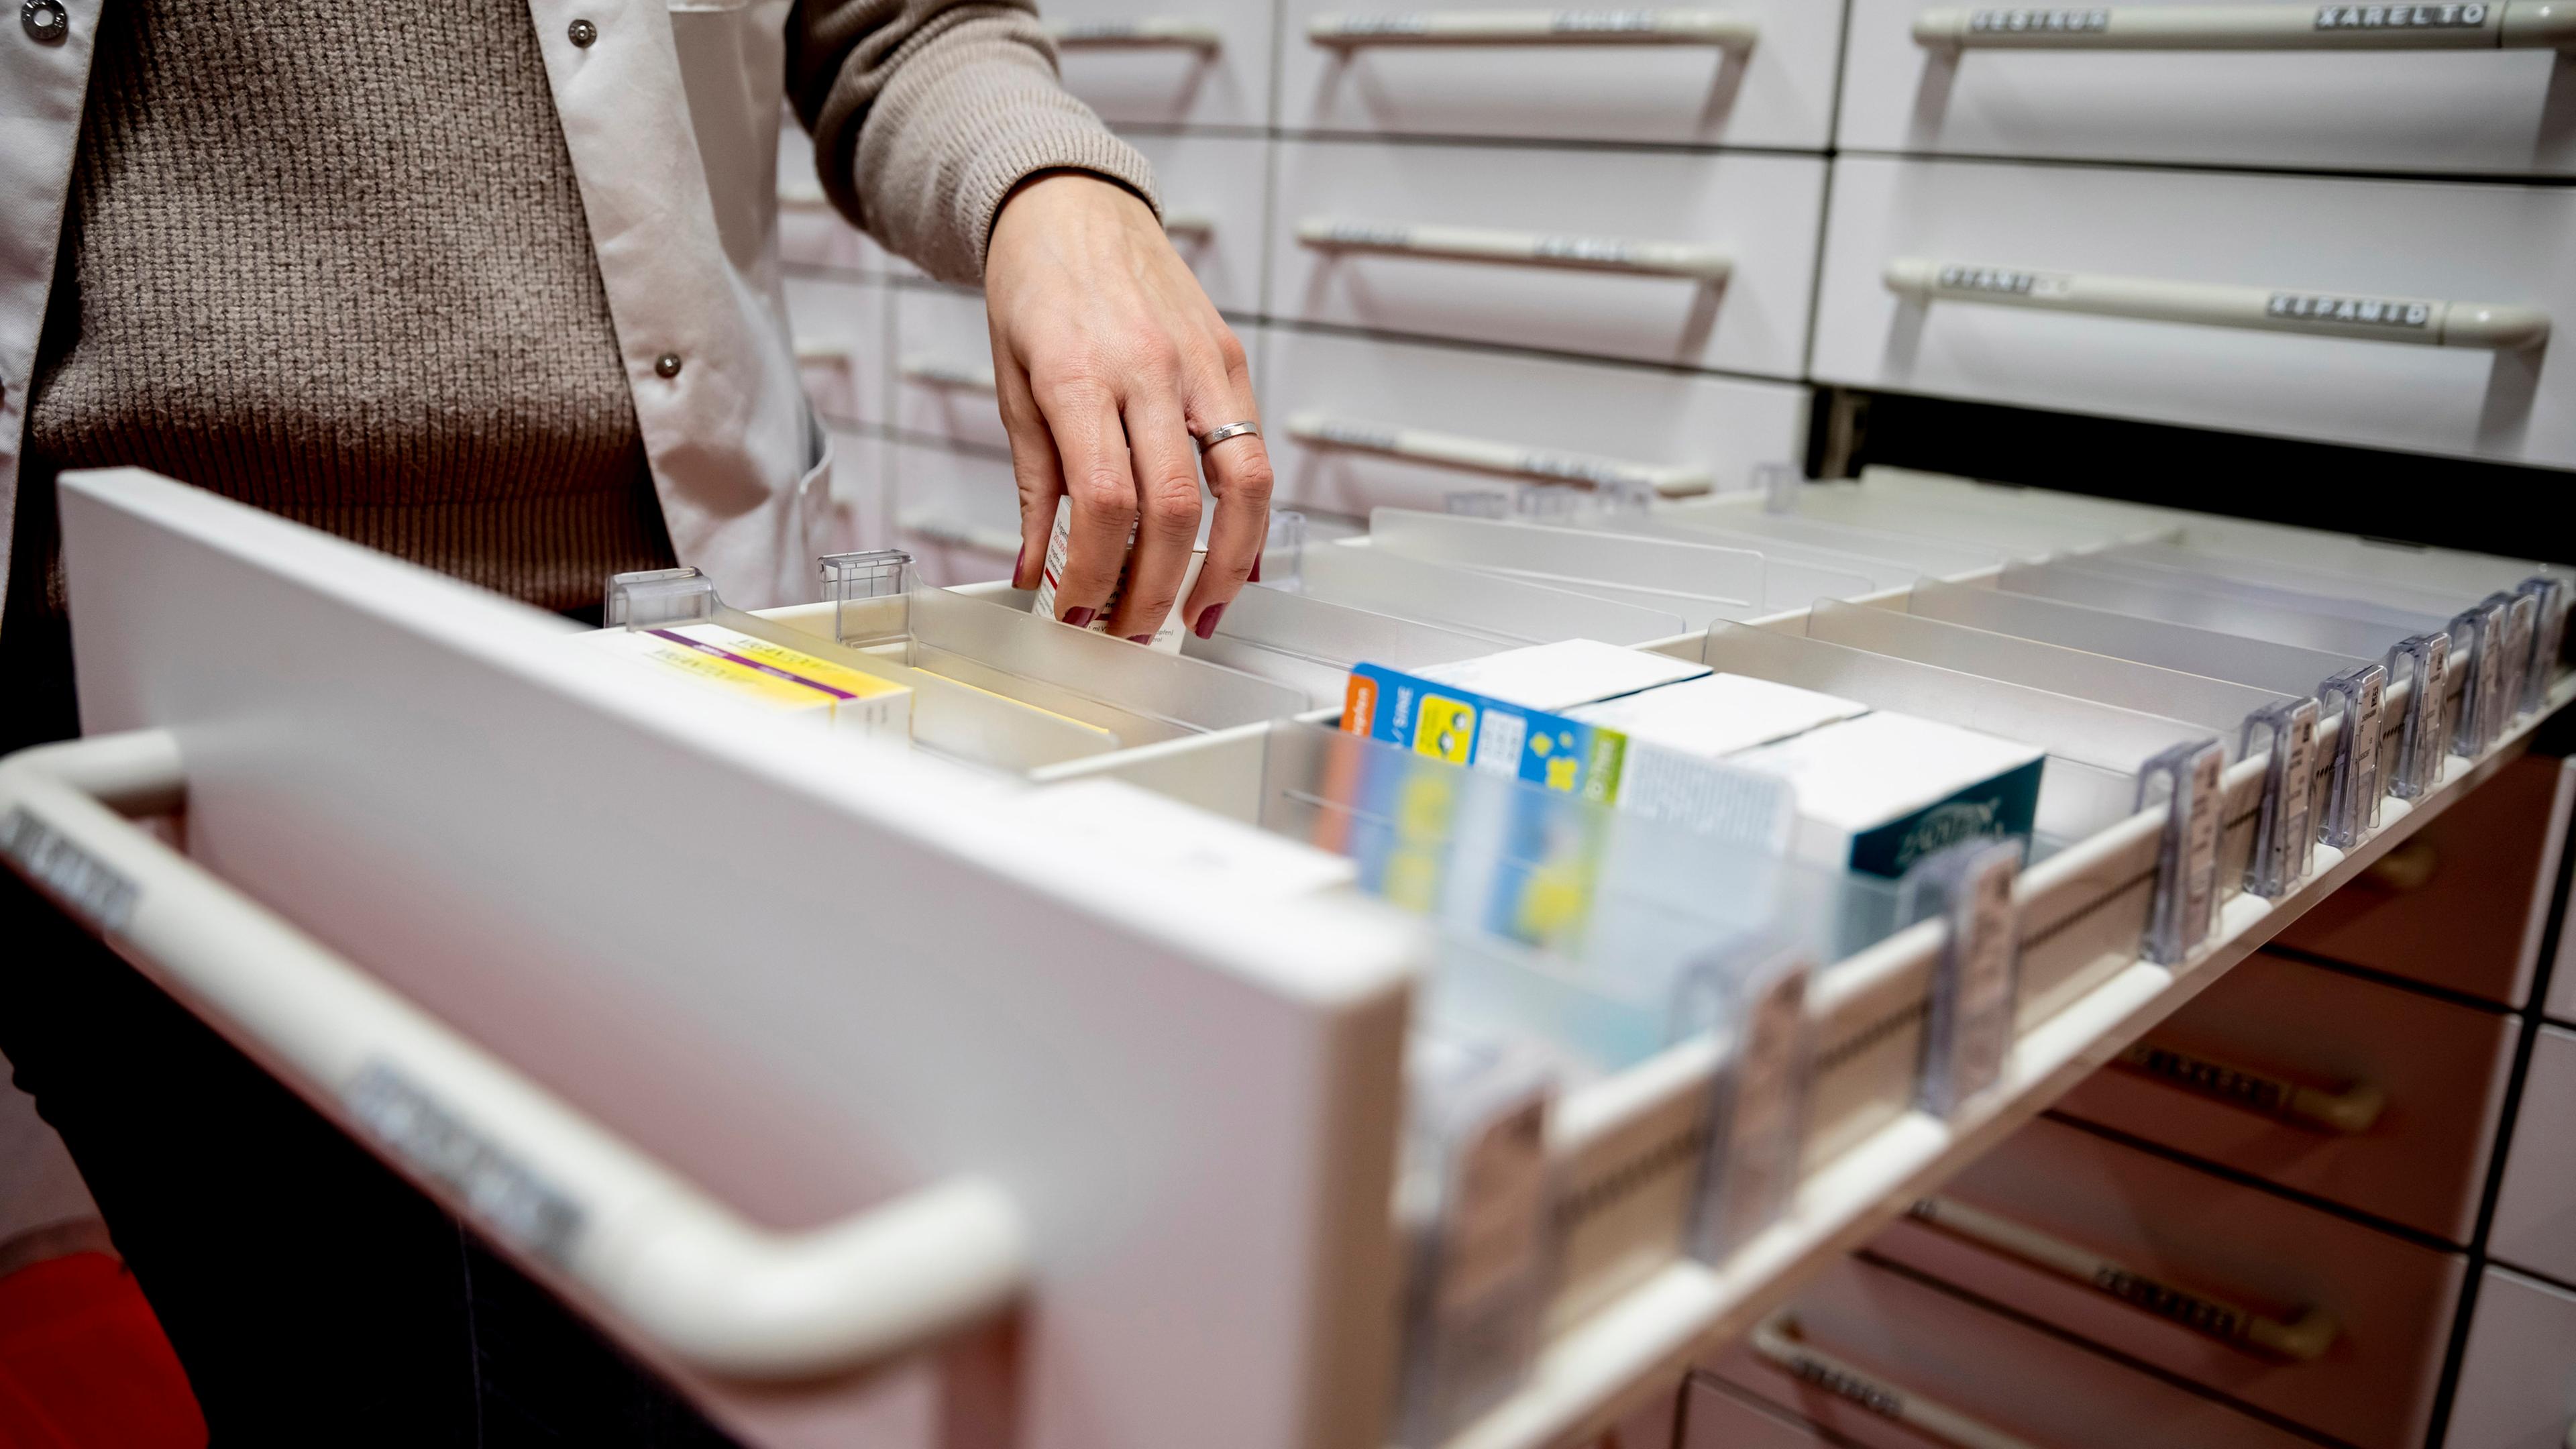 "Archiv" Medikamentenmangel in Apotheken, ausgelöst durch das Coronavirus  